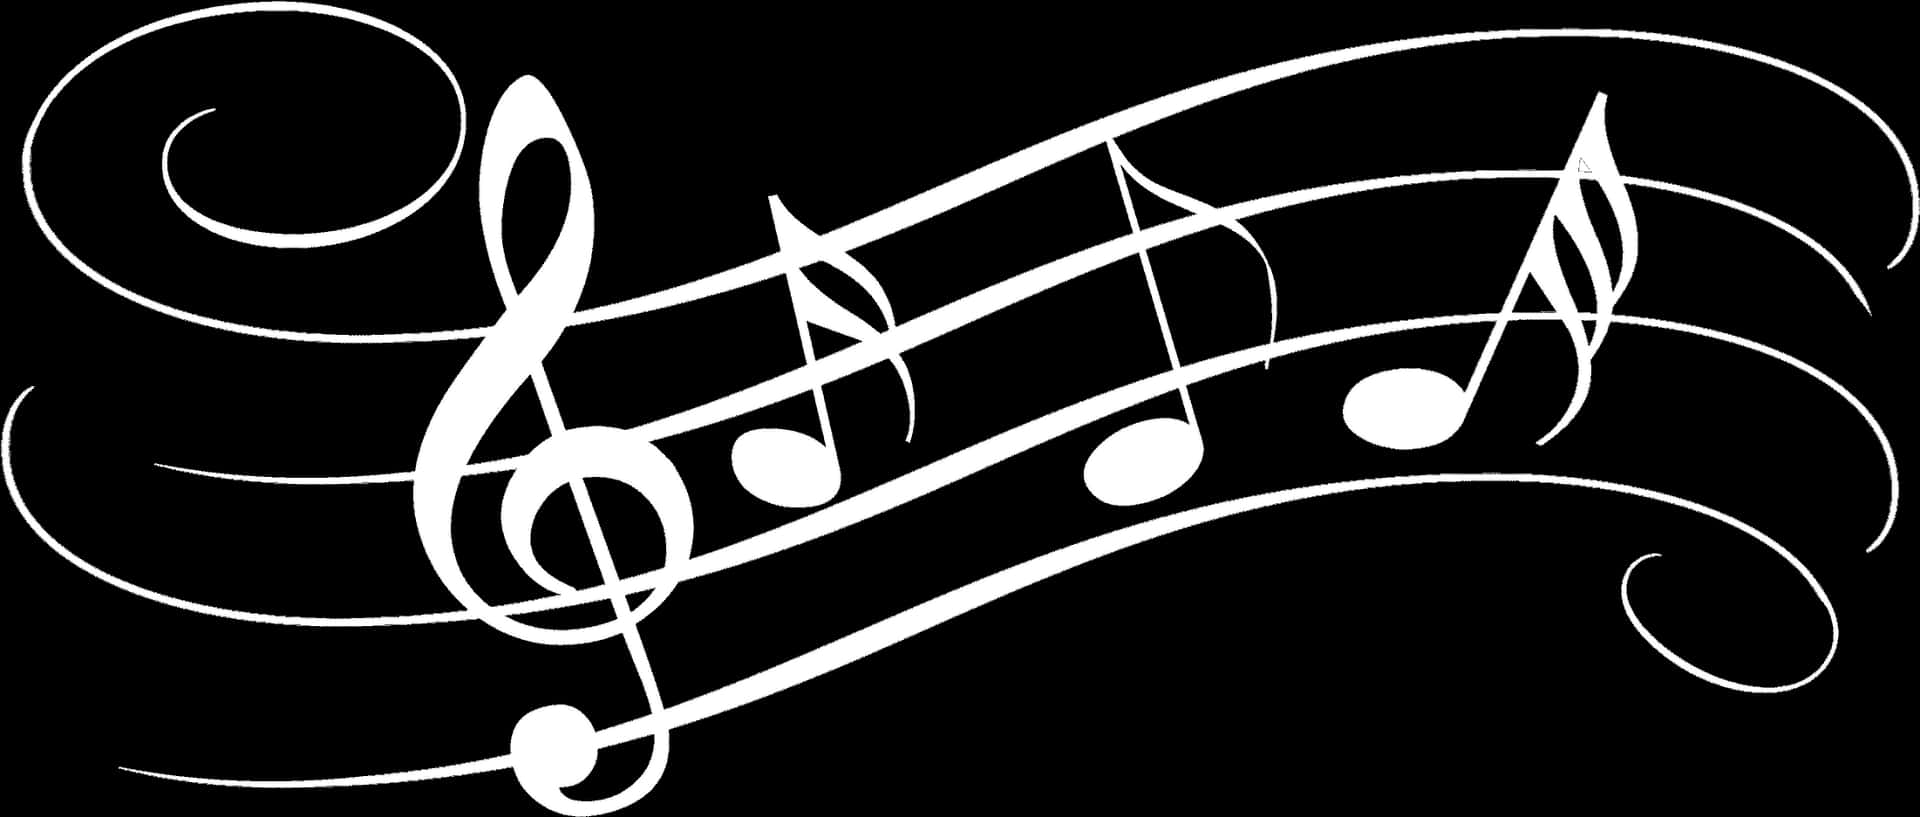 Noter musik blandet sammen i harmoni